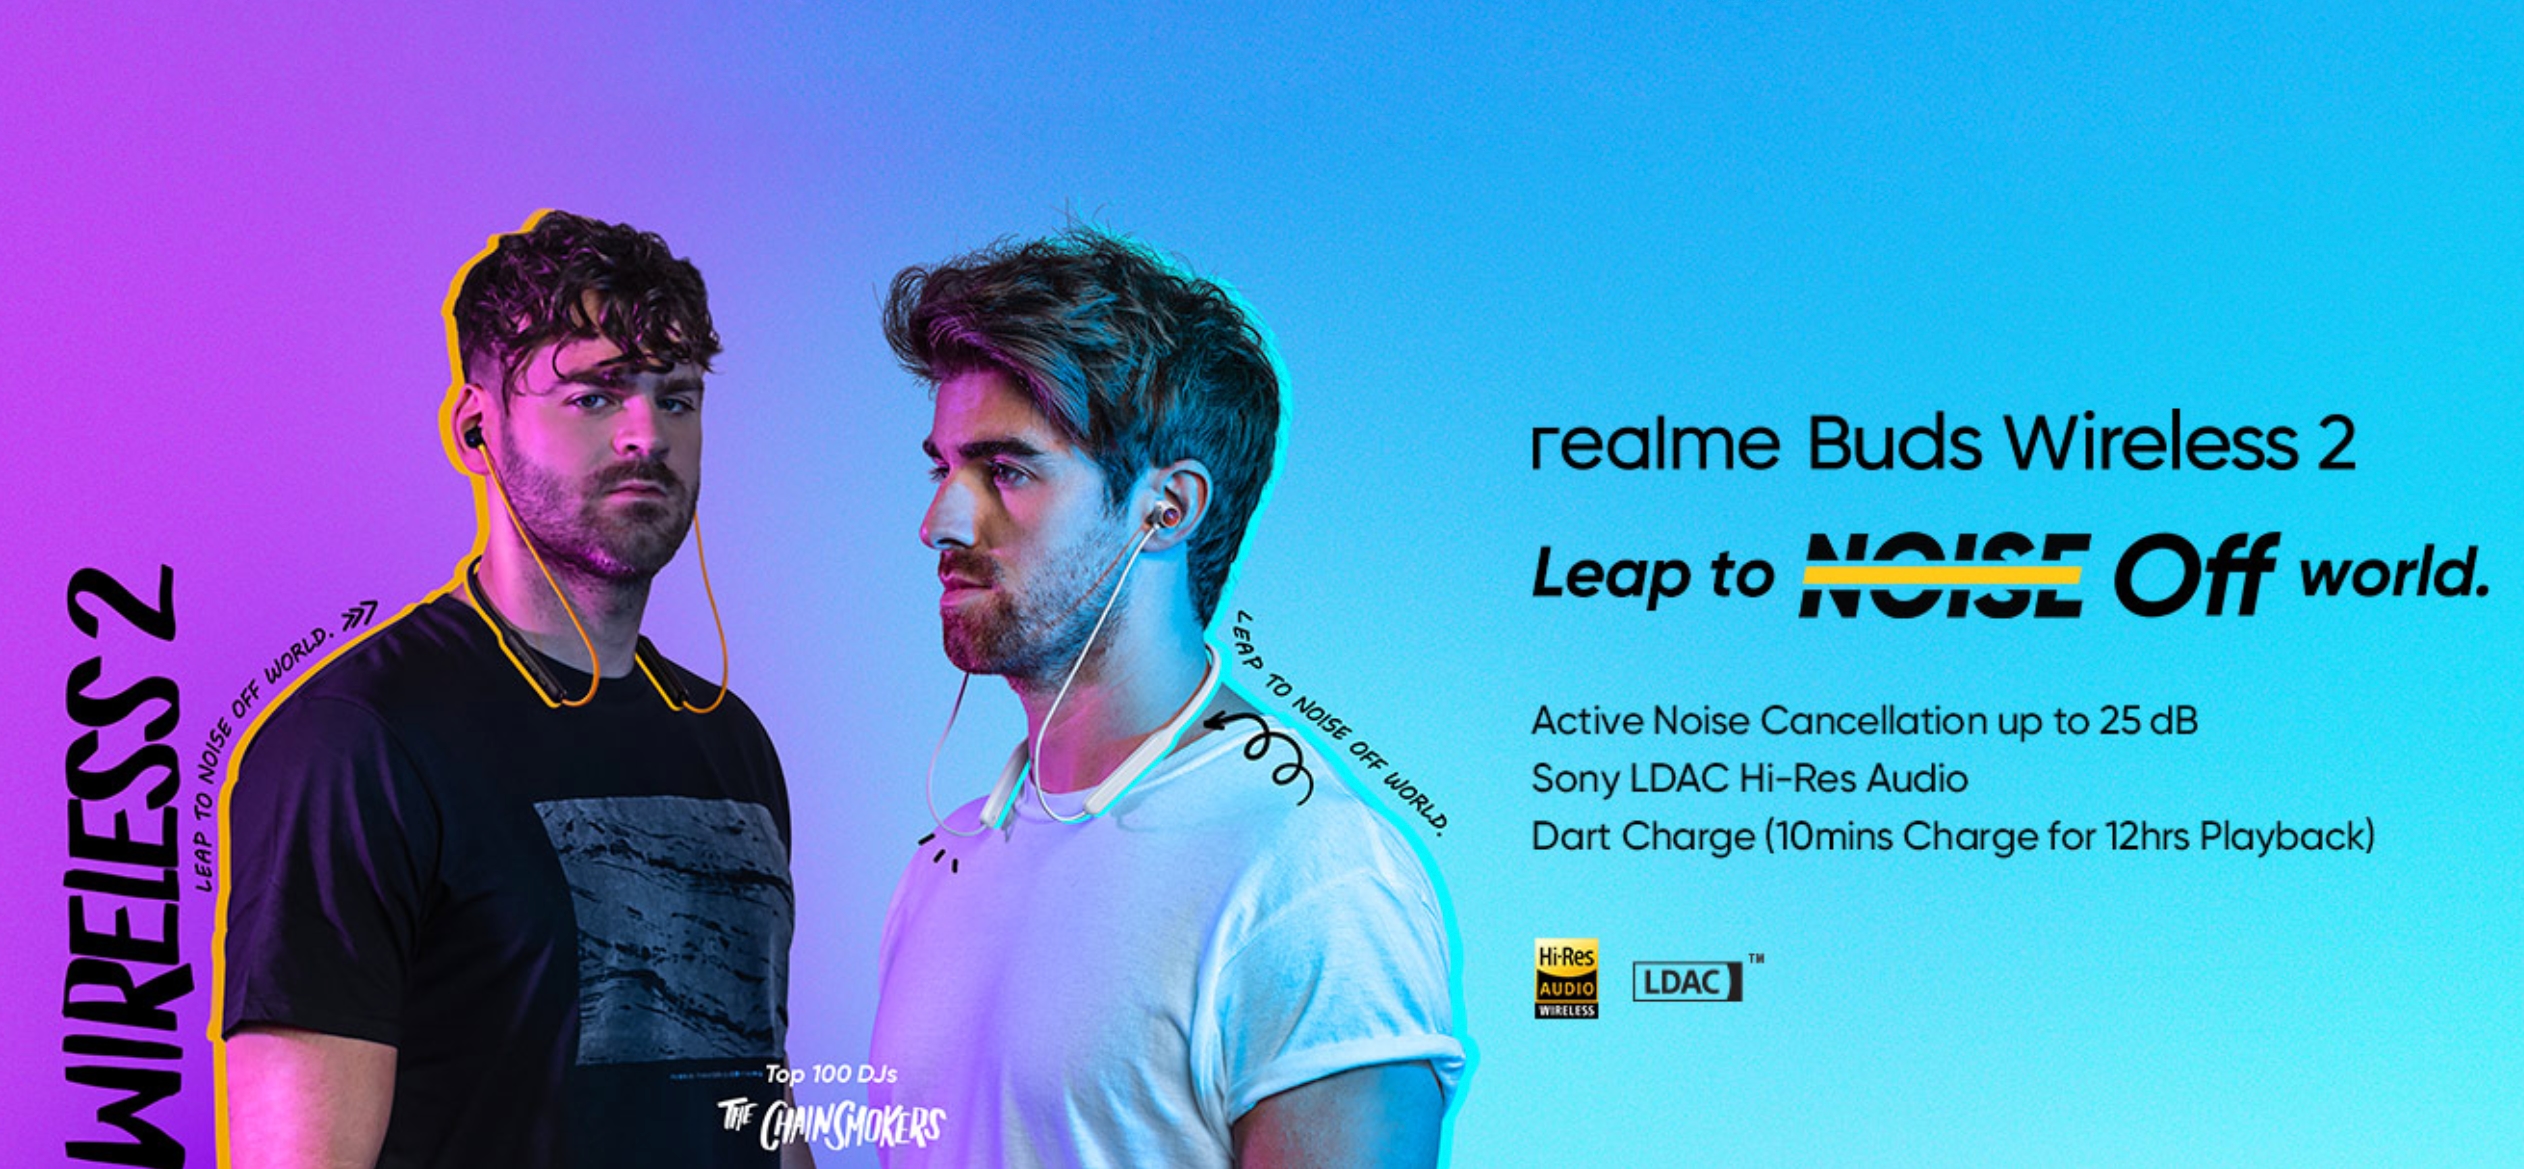 Realme wprowadził Buds Wireless 2 z Game Mode, ANC, Google Fast Pair i wsparciem LDAC za 48 dolarów